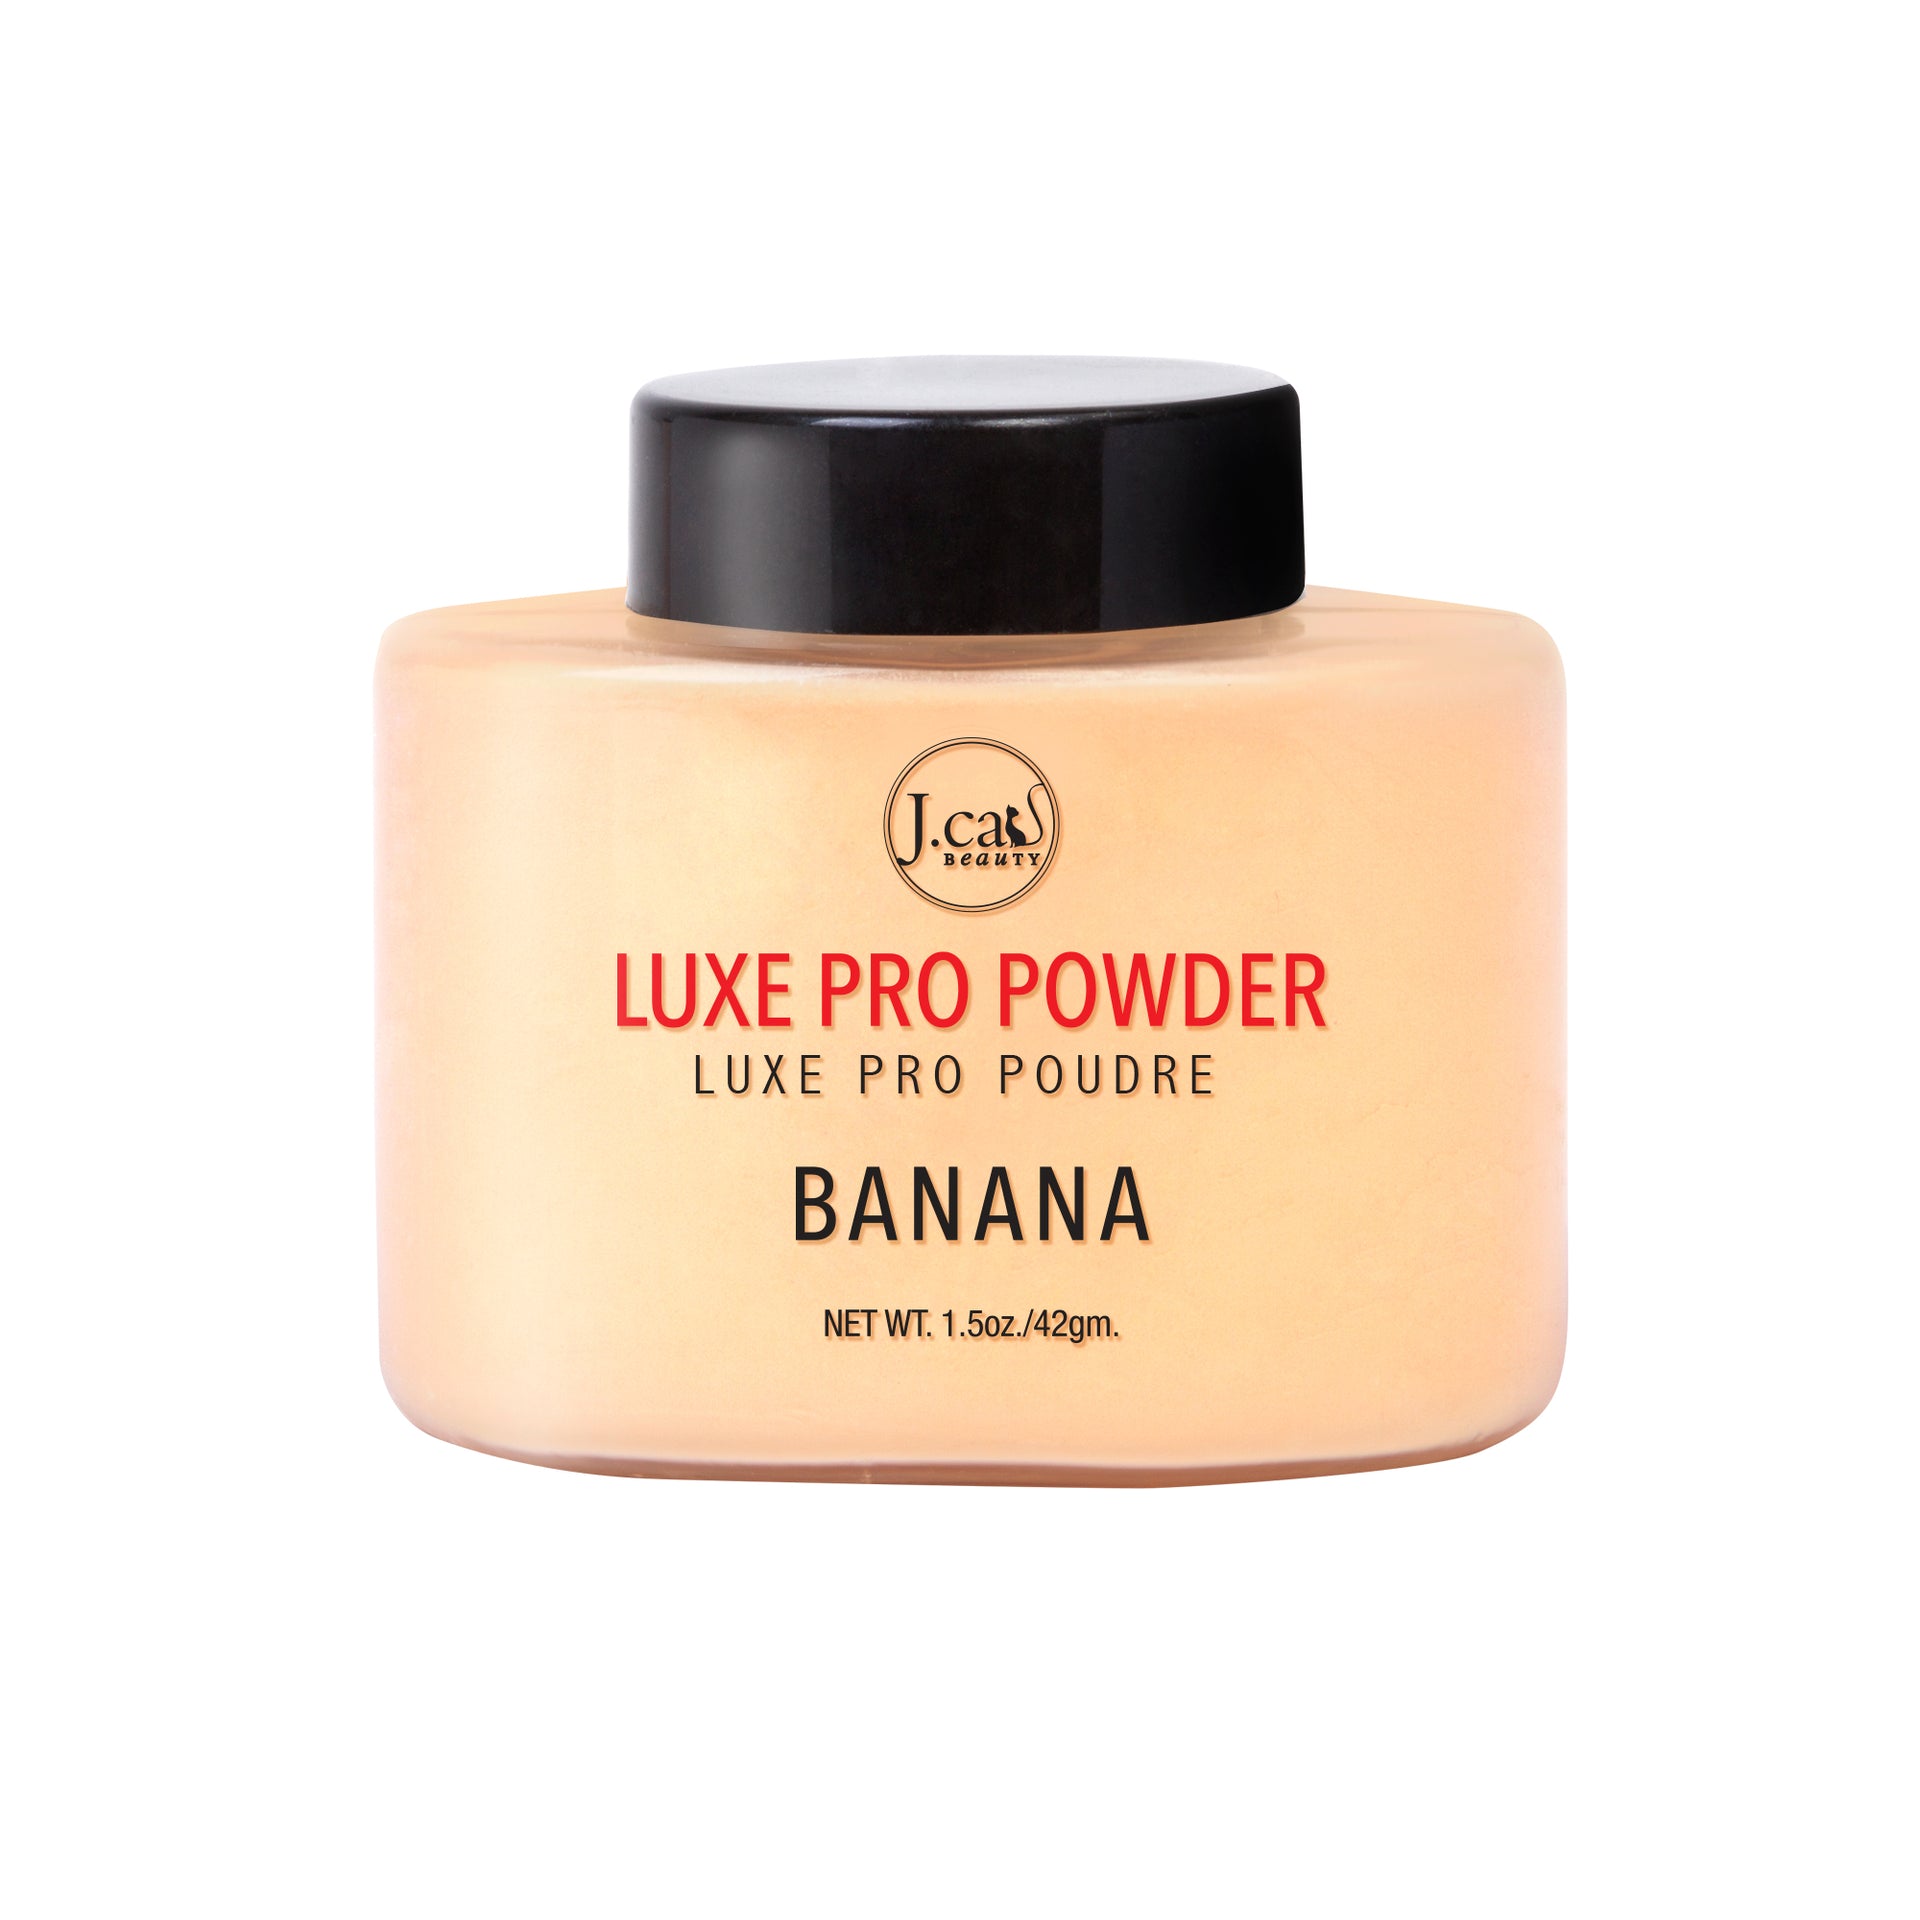 Luxe Pro Powder – J.Cat Beauty